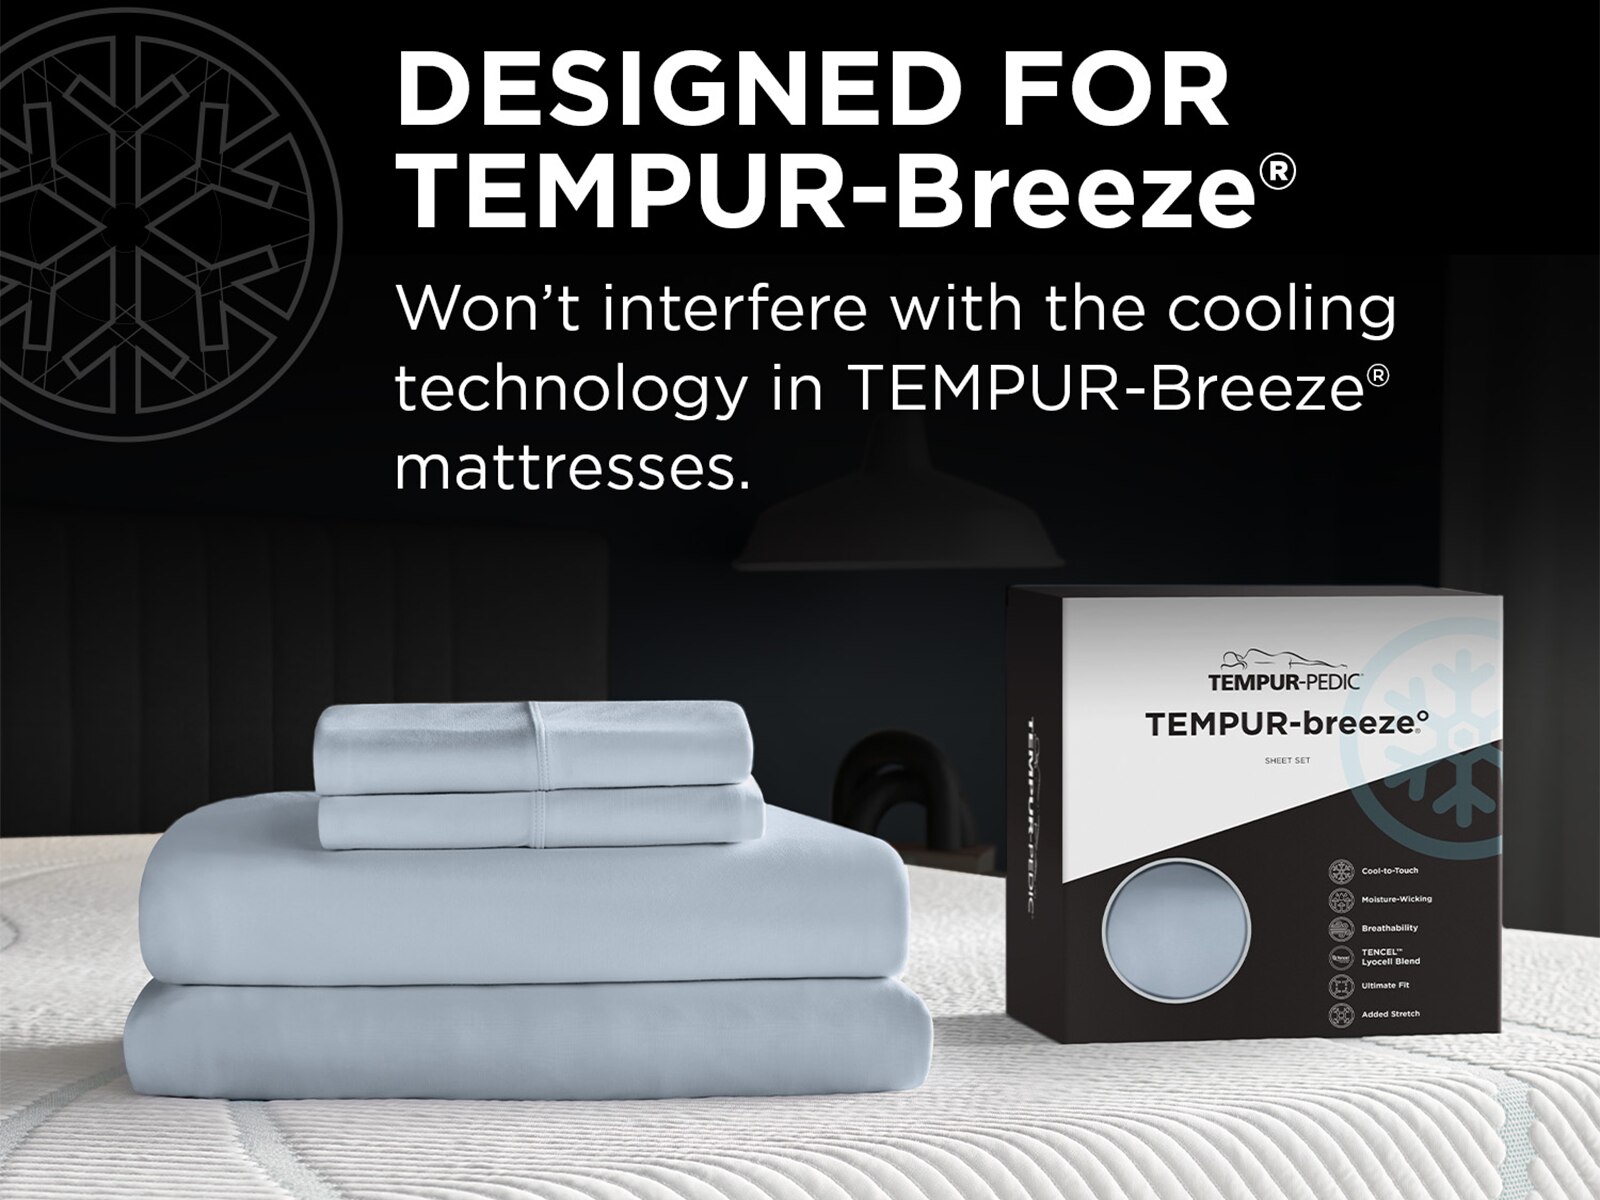 TEMPUR-Breeze° Cooling Sheet Set